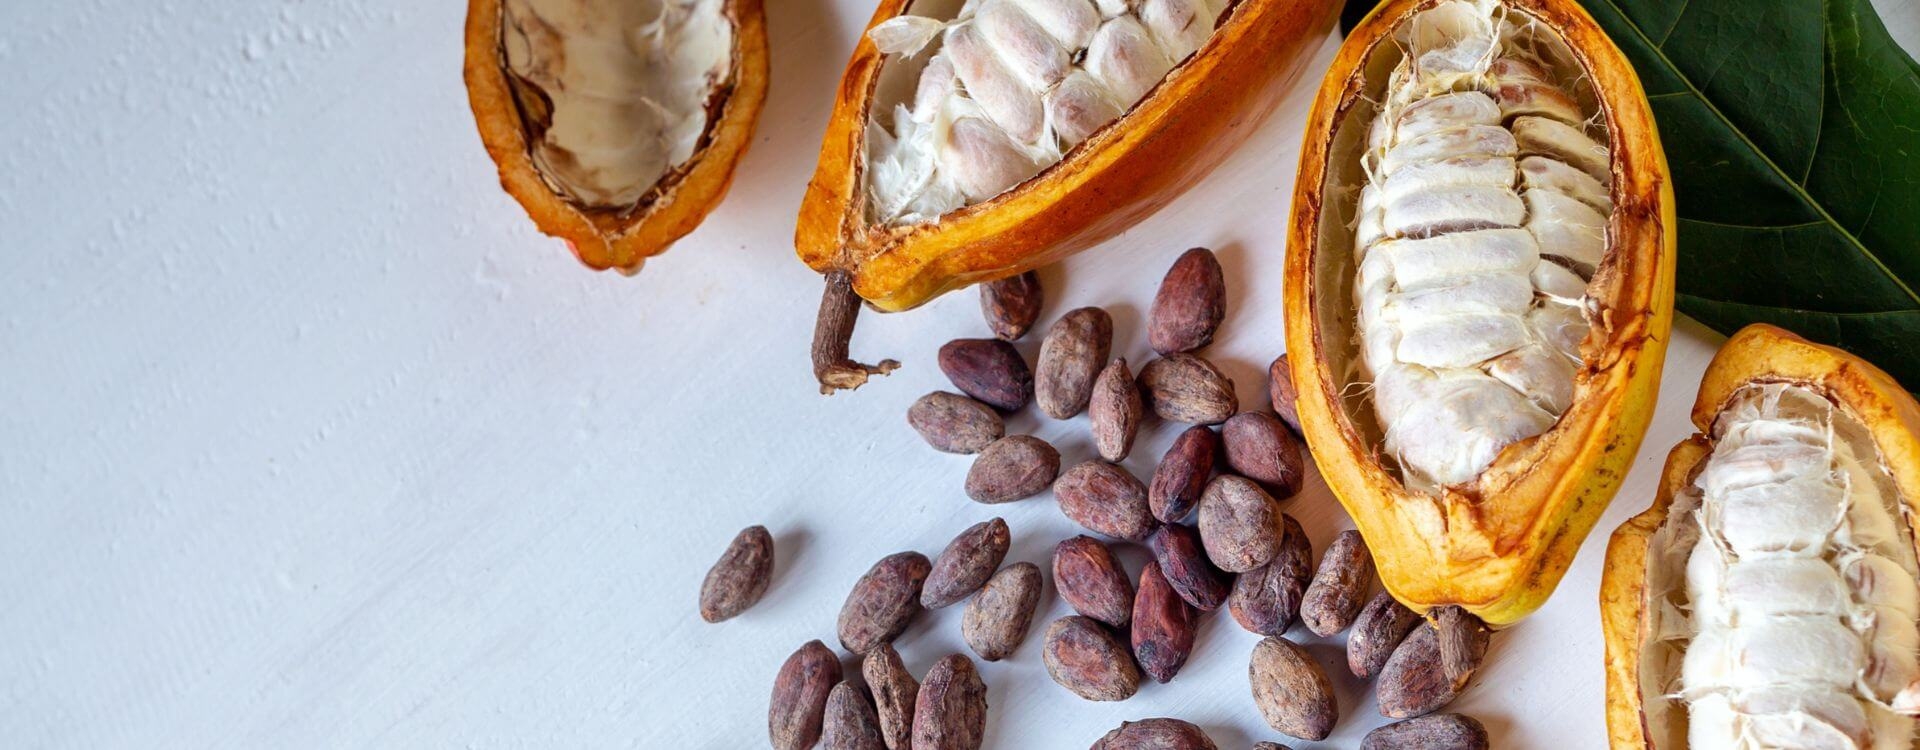 De Effecten van een Rauwe Cacao Ceremonie - Wat voel Je van Rauwe Cacao?